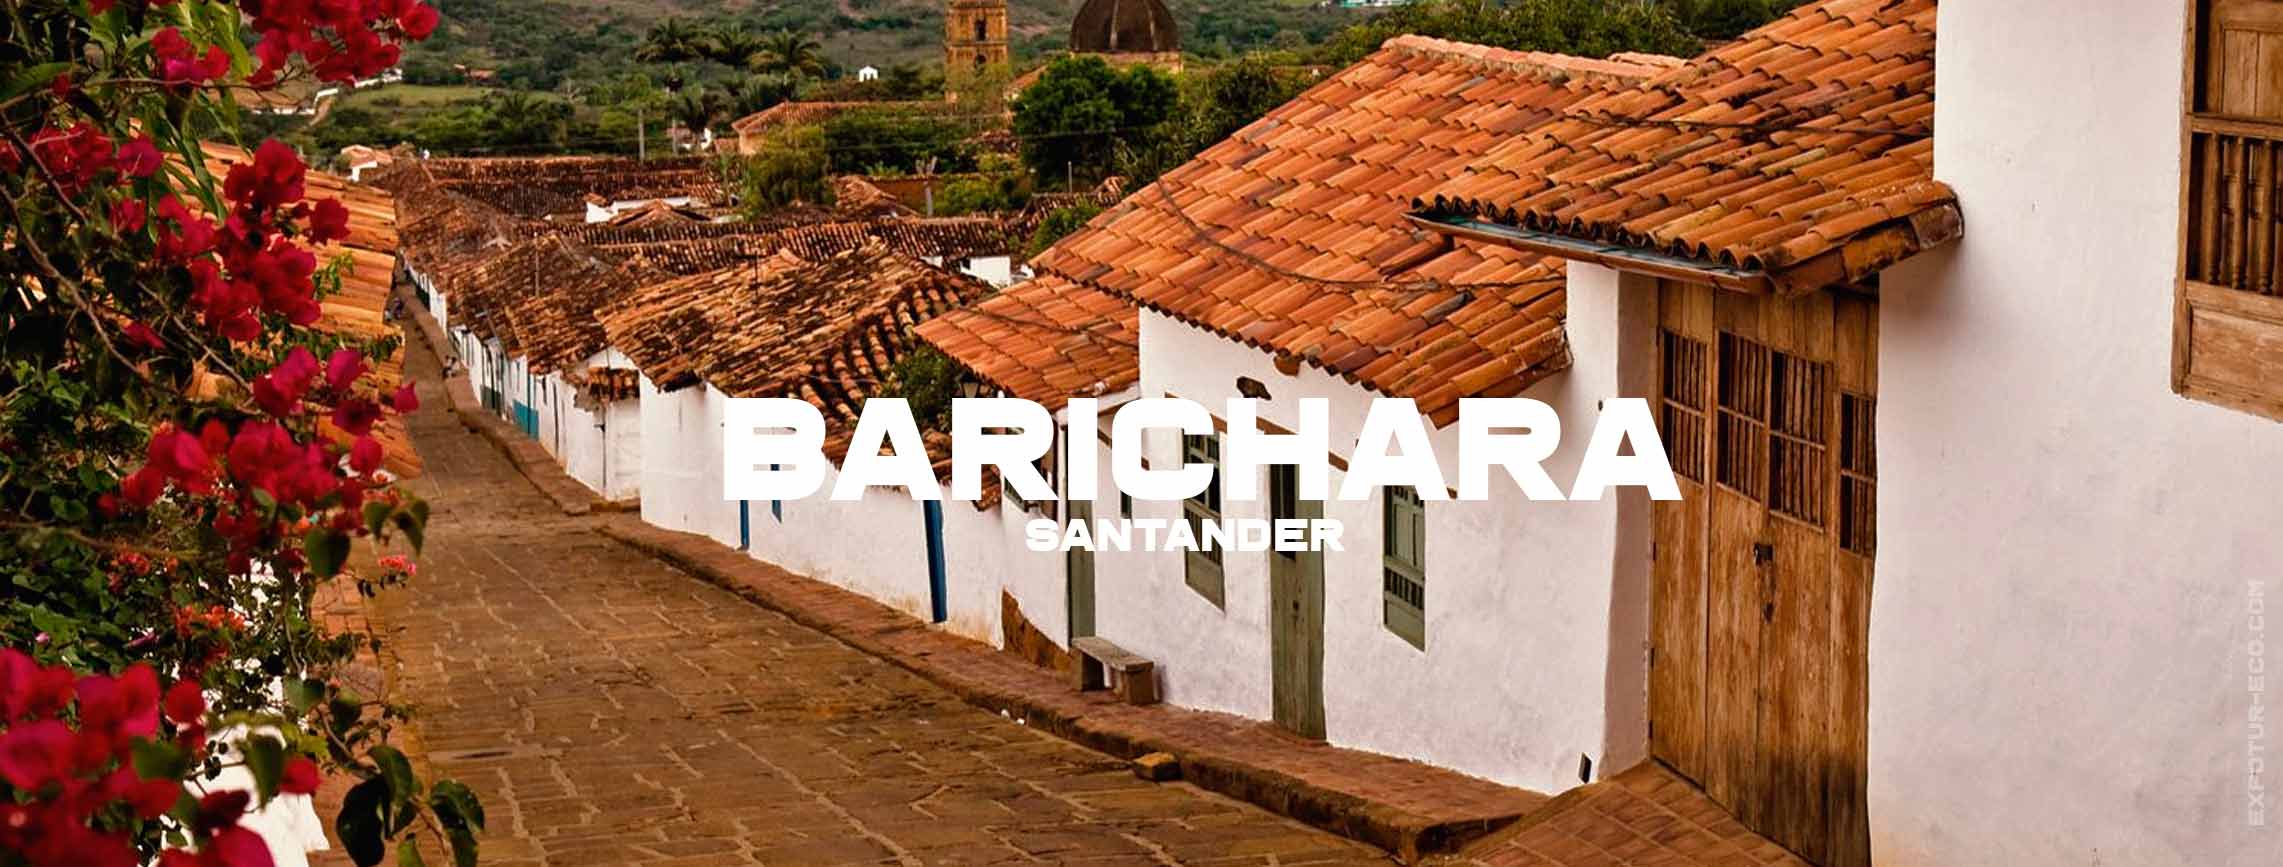 barichara-santander-blog-semana-santa-expotur-lugar-turistico-colombia